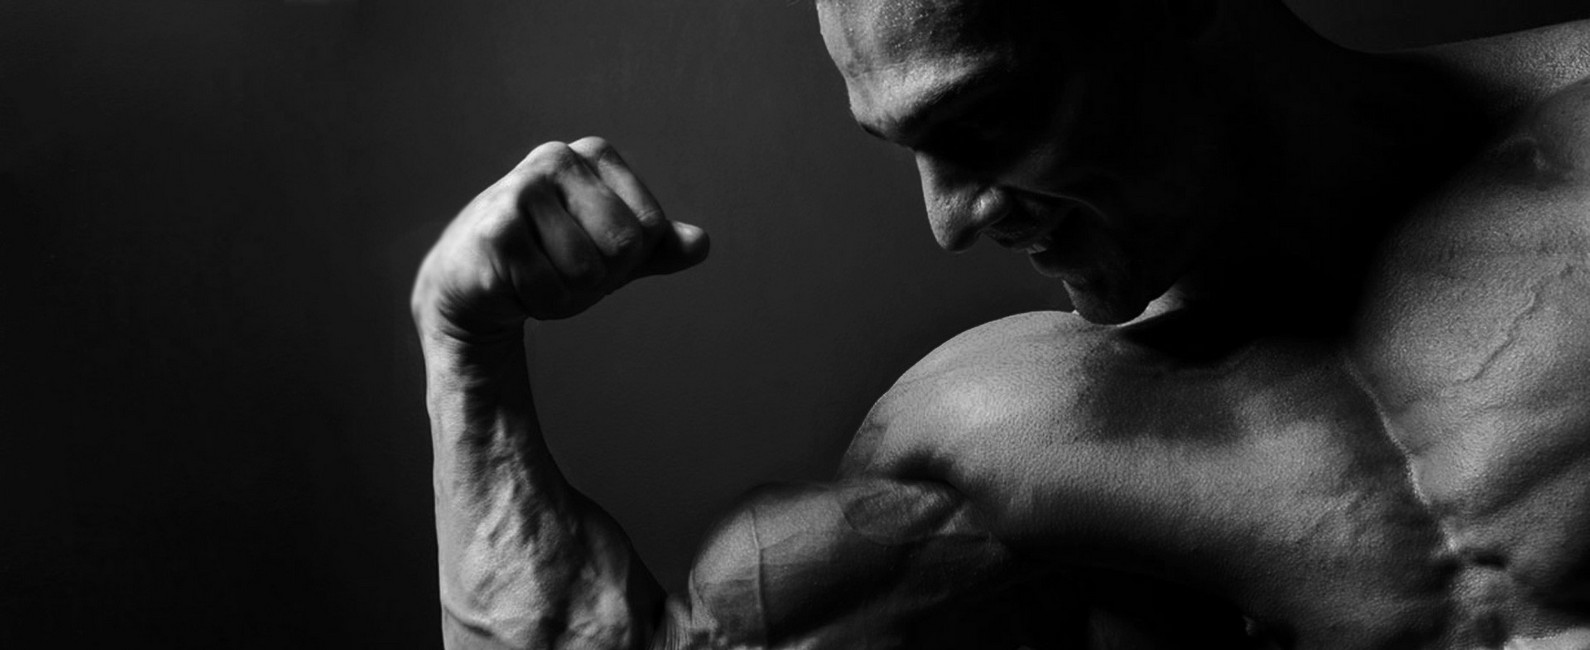 Anabolic steroids cause muscle mass